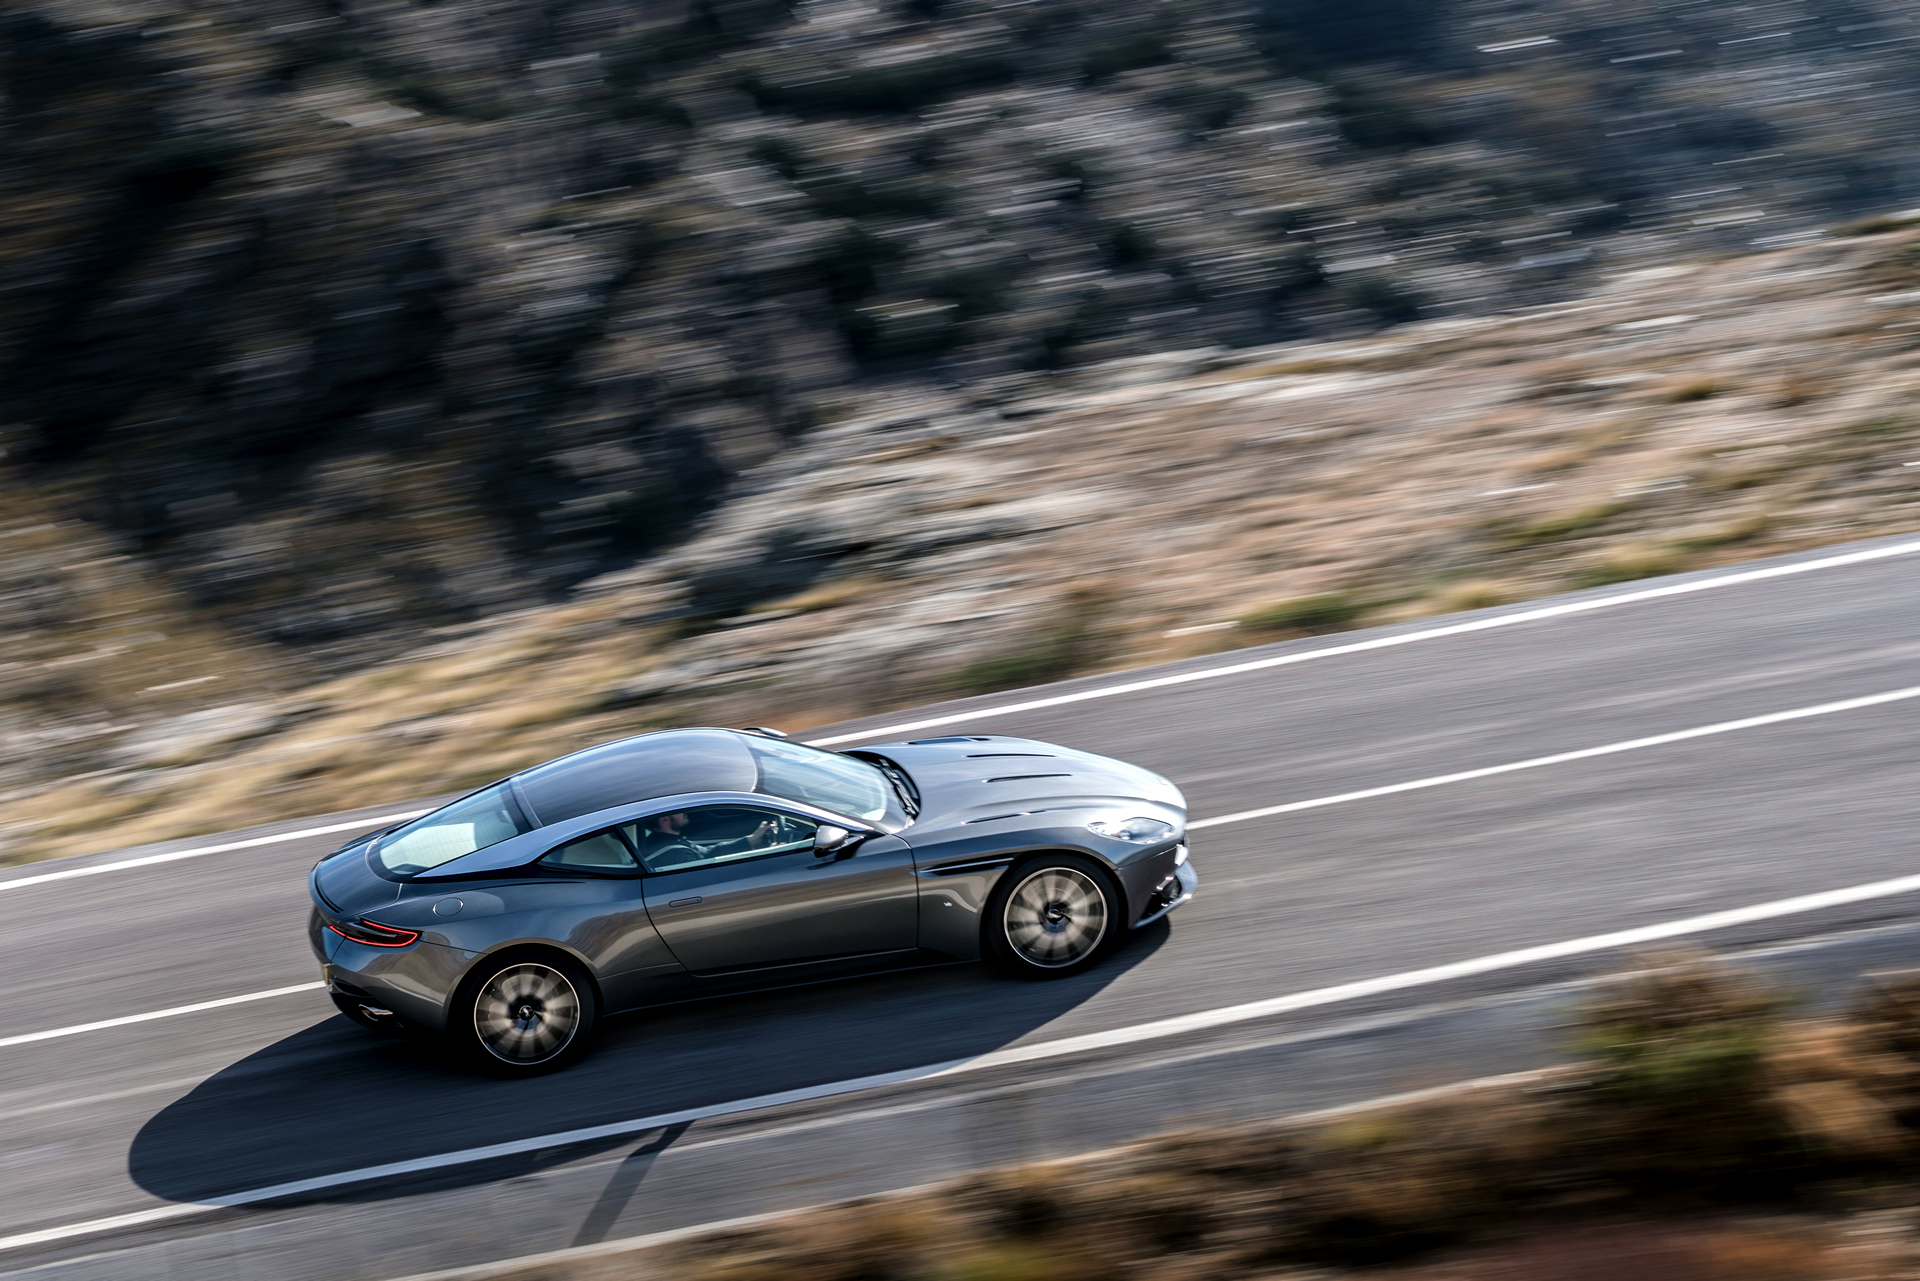 Aston Martin DB11 © Aston Martin Lagonda Limited